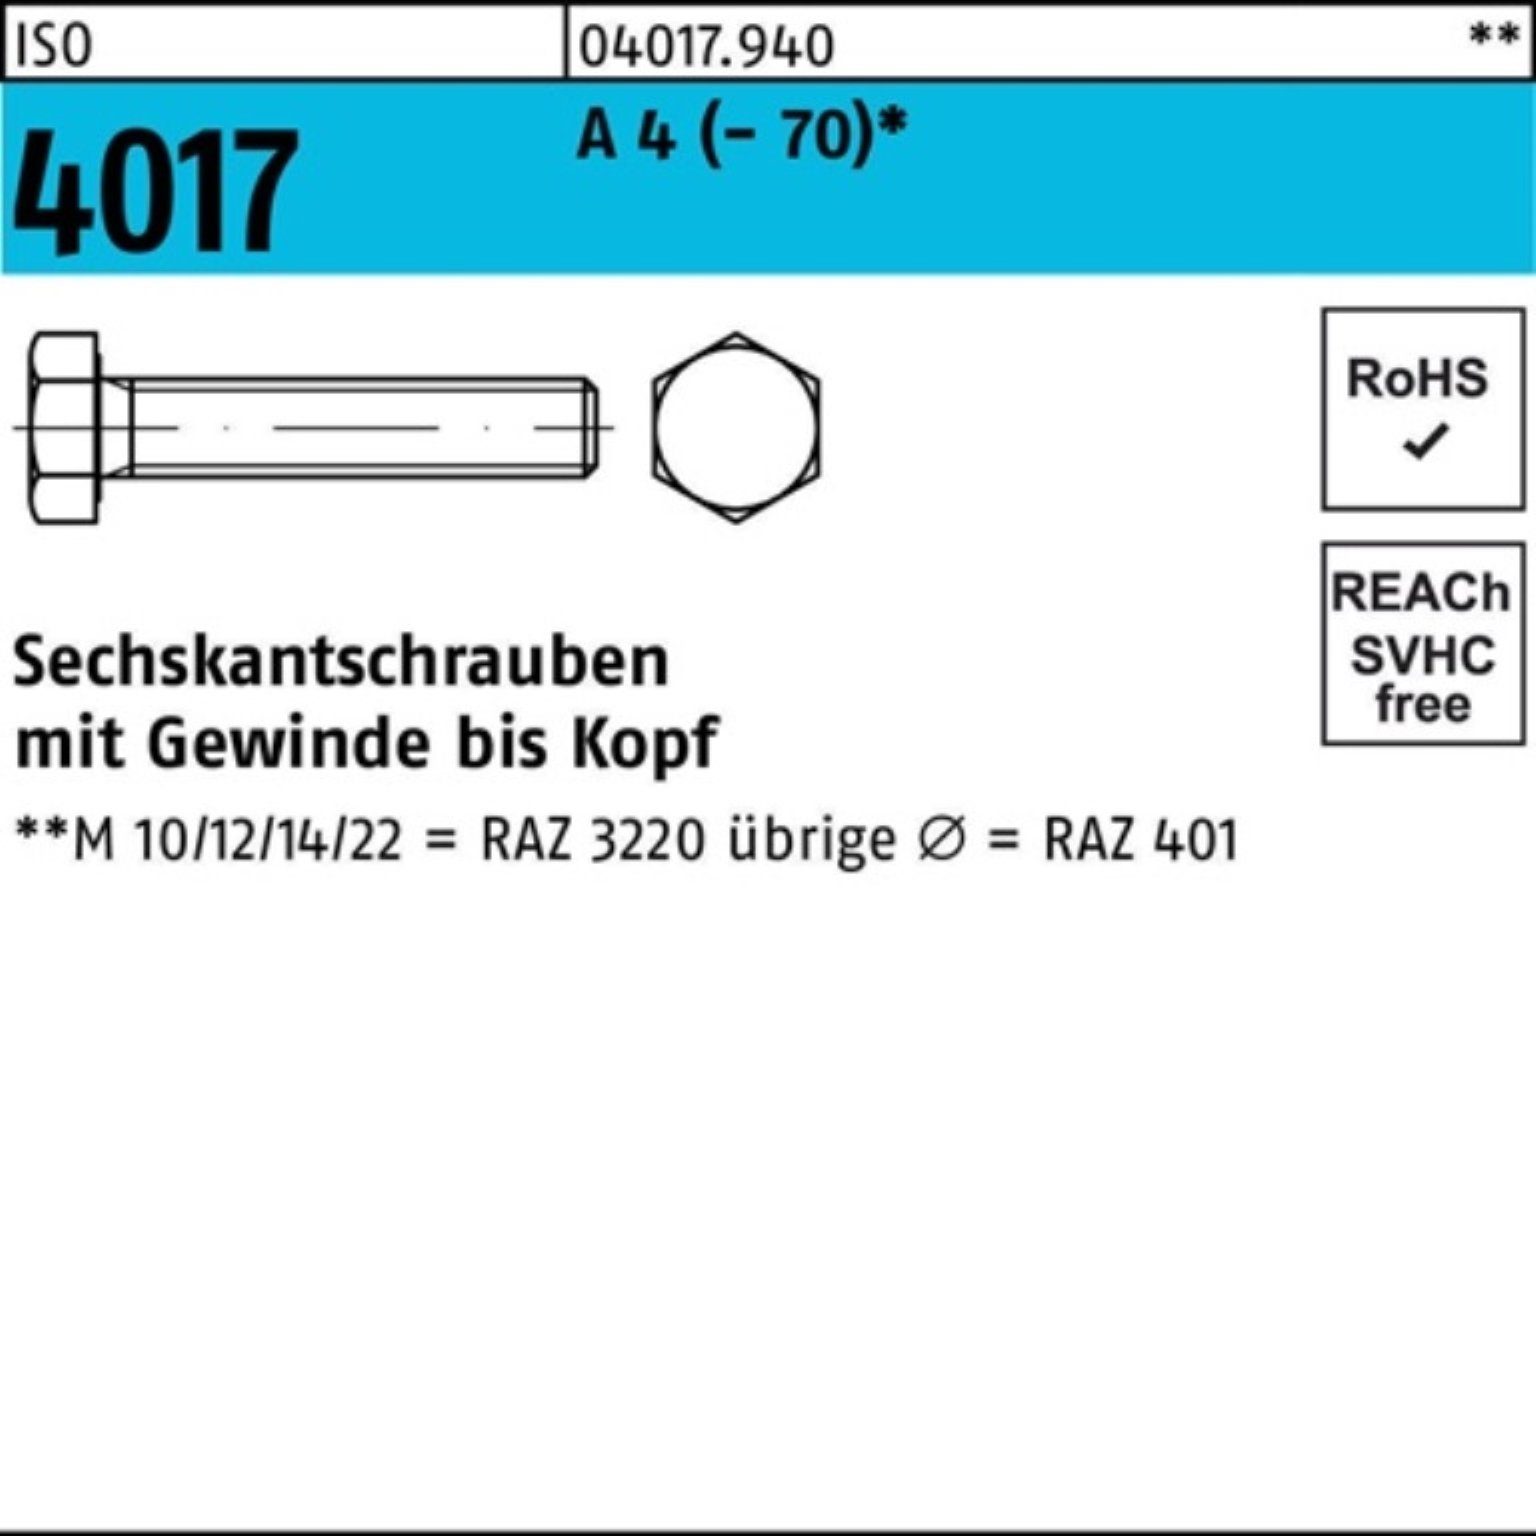 Bufab Sechskantschraube 100er ISO M10x (70) Stück Sechskantschraube 4017 A 100 40 VG Pack 4